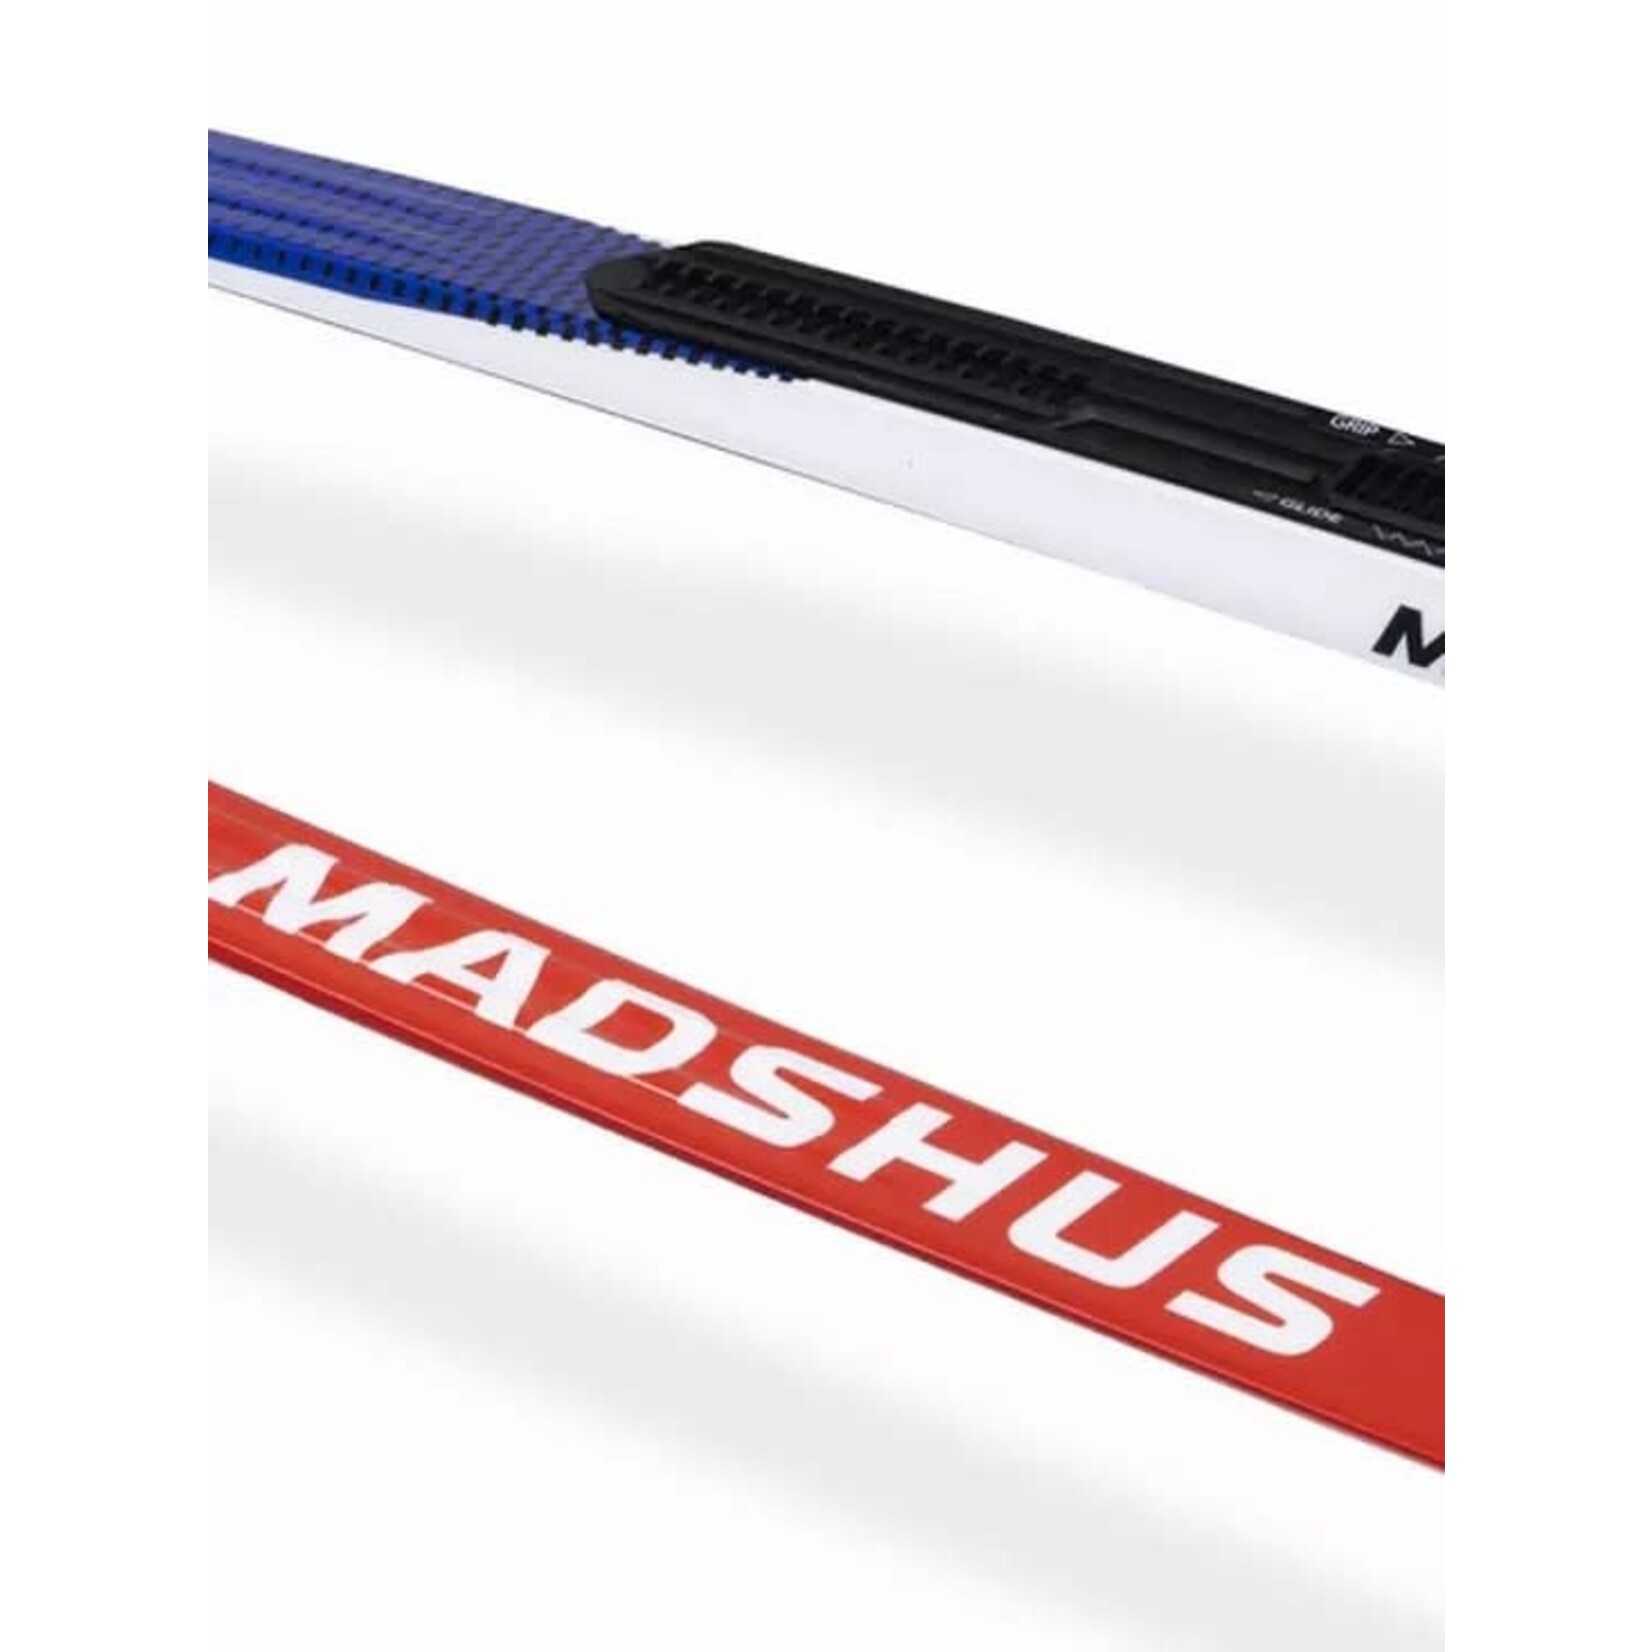 Madshus Endurace Skin (skis de fond classiques)